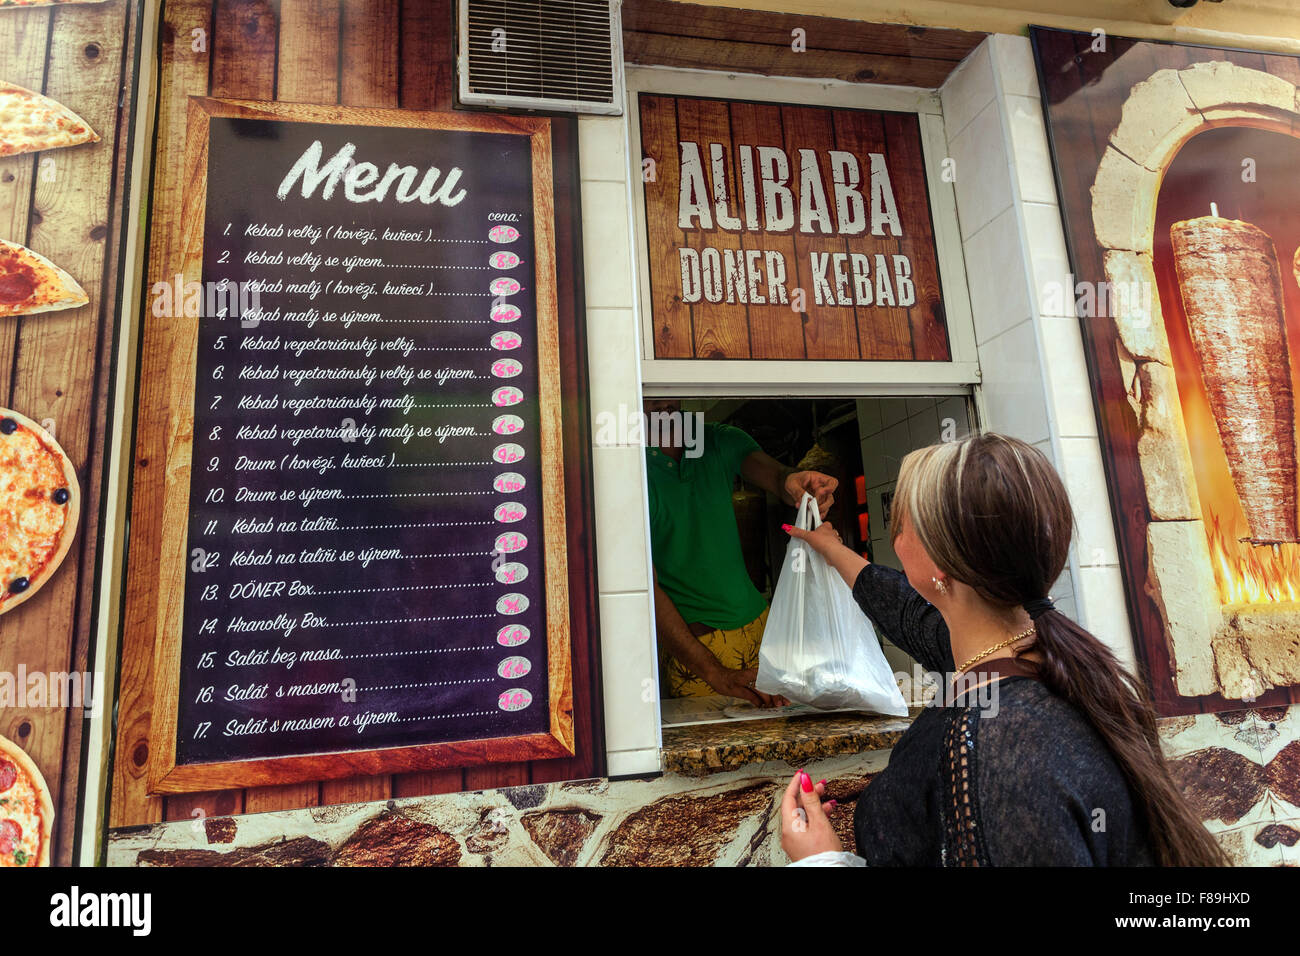 Doner kebab para llevar, comida rápida, una mujer lleva la comida en una bolsa de plástico República Checa Foto de stock